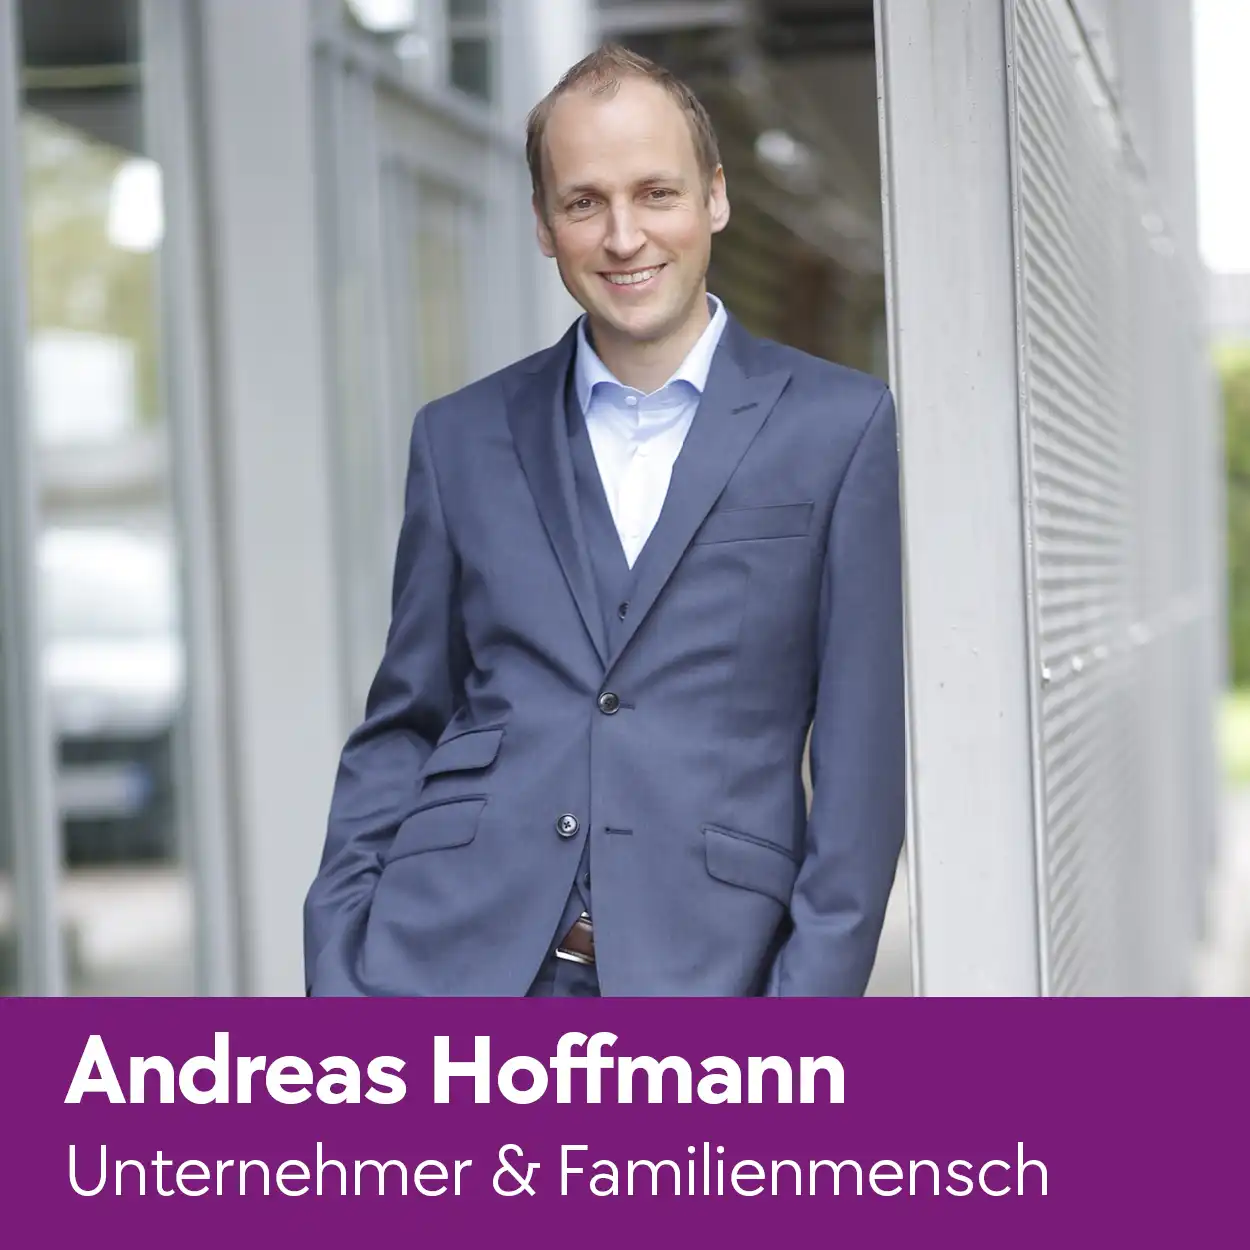 Verkaufen lernen Buch Autor Andreas Hoffmann